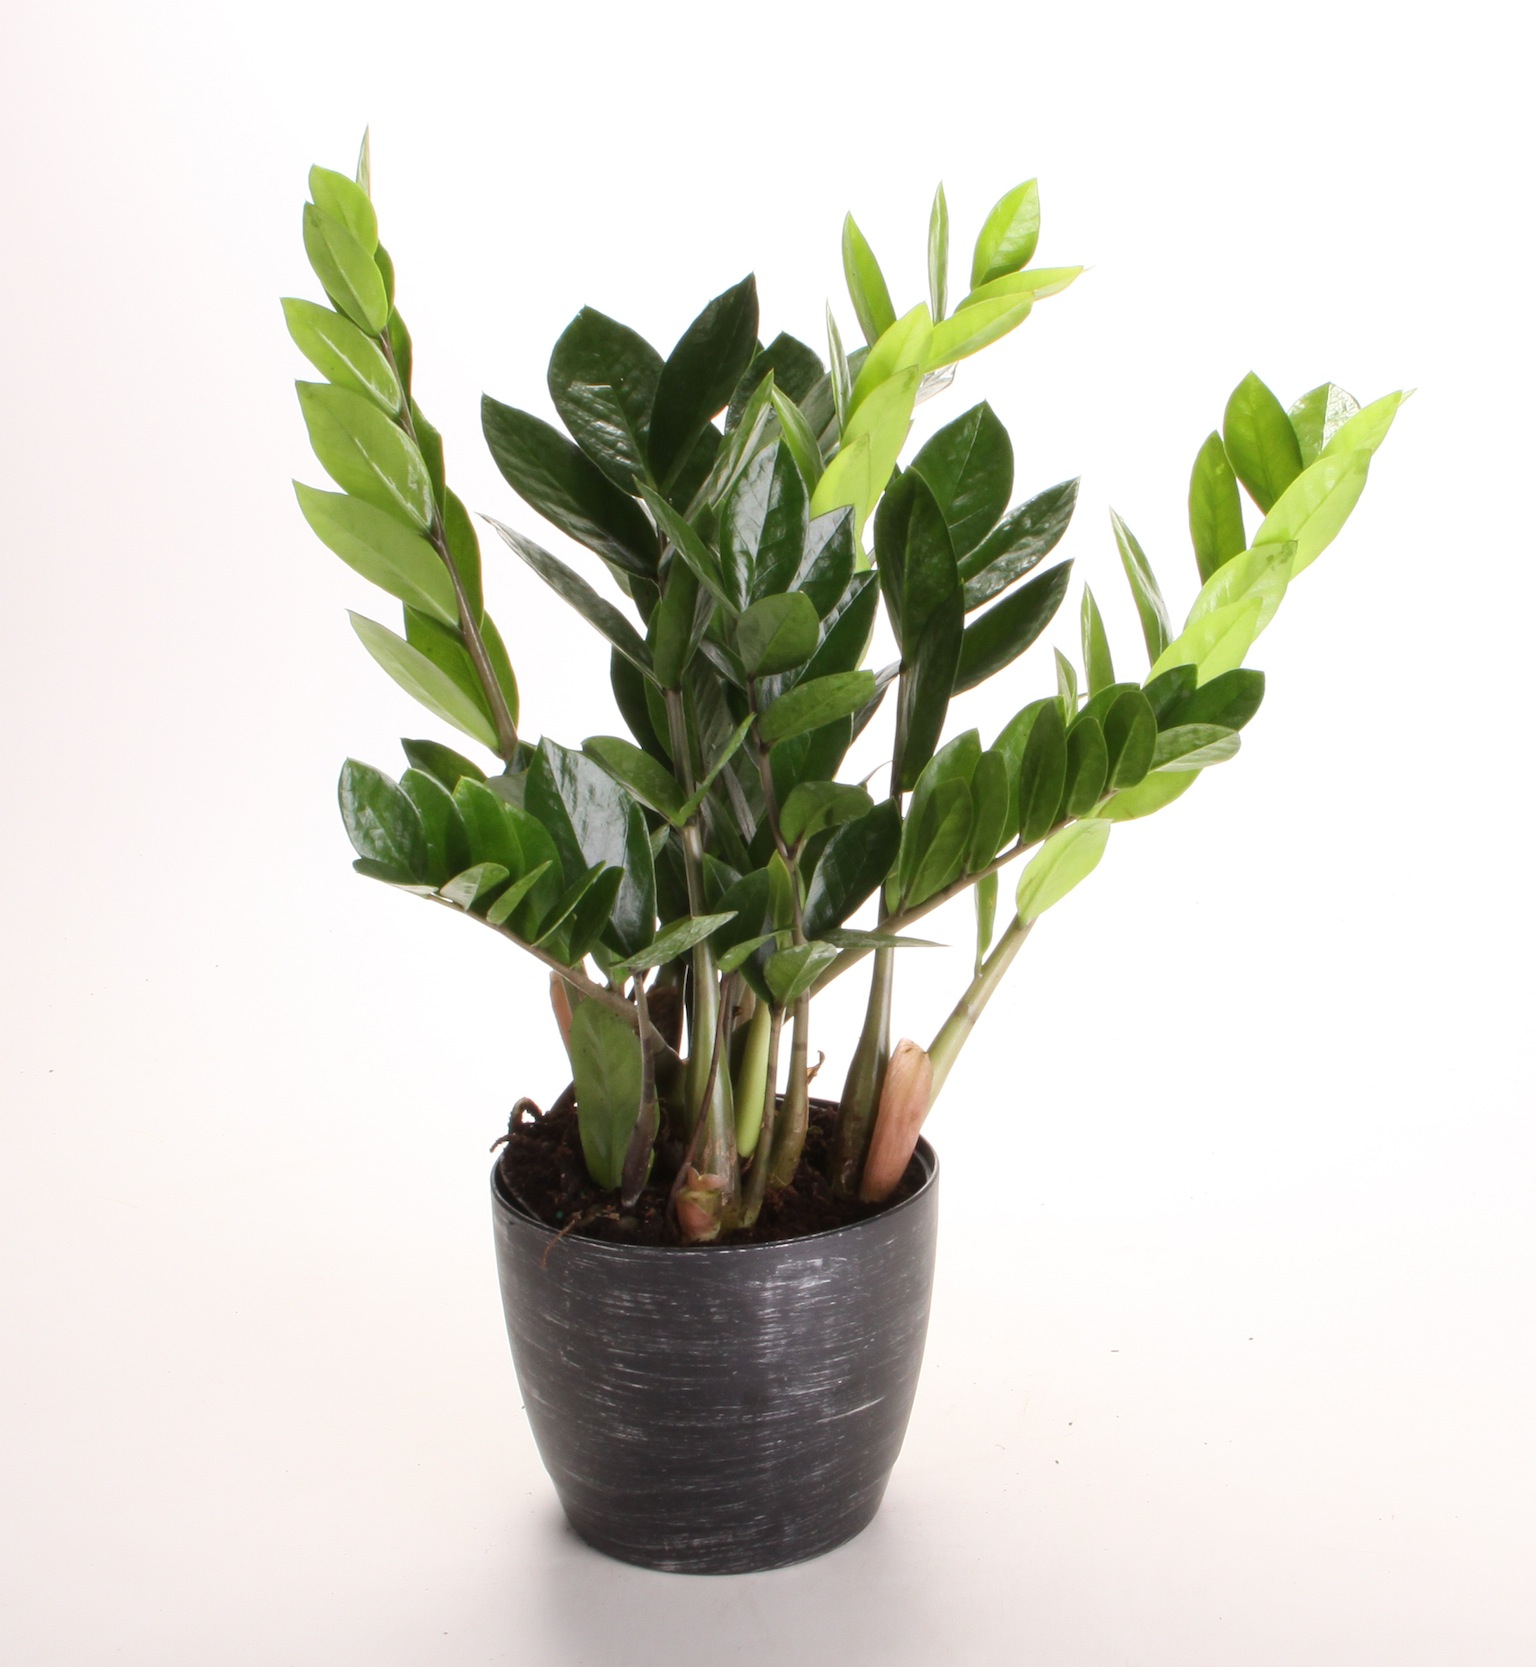 download best low light indoor plants for free